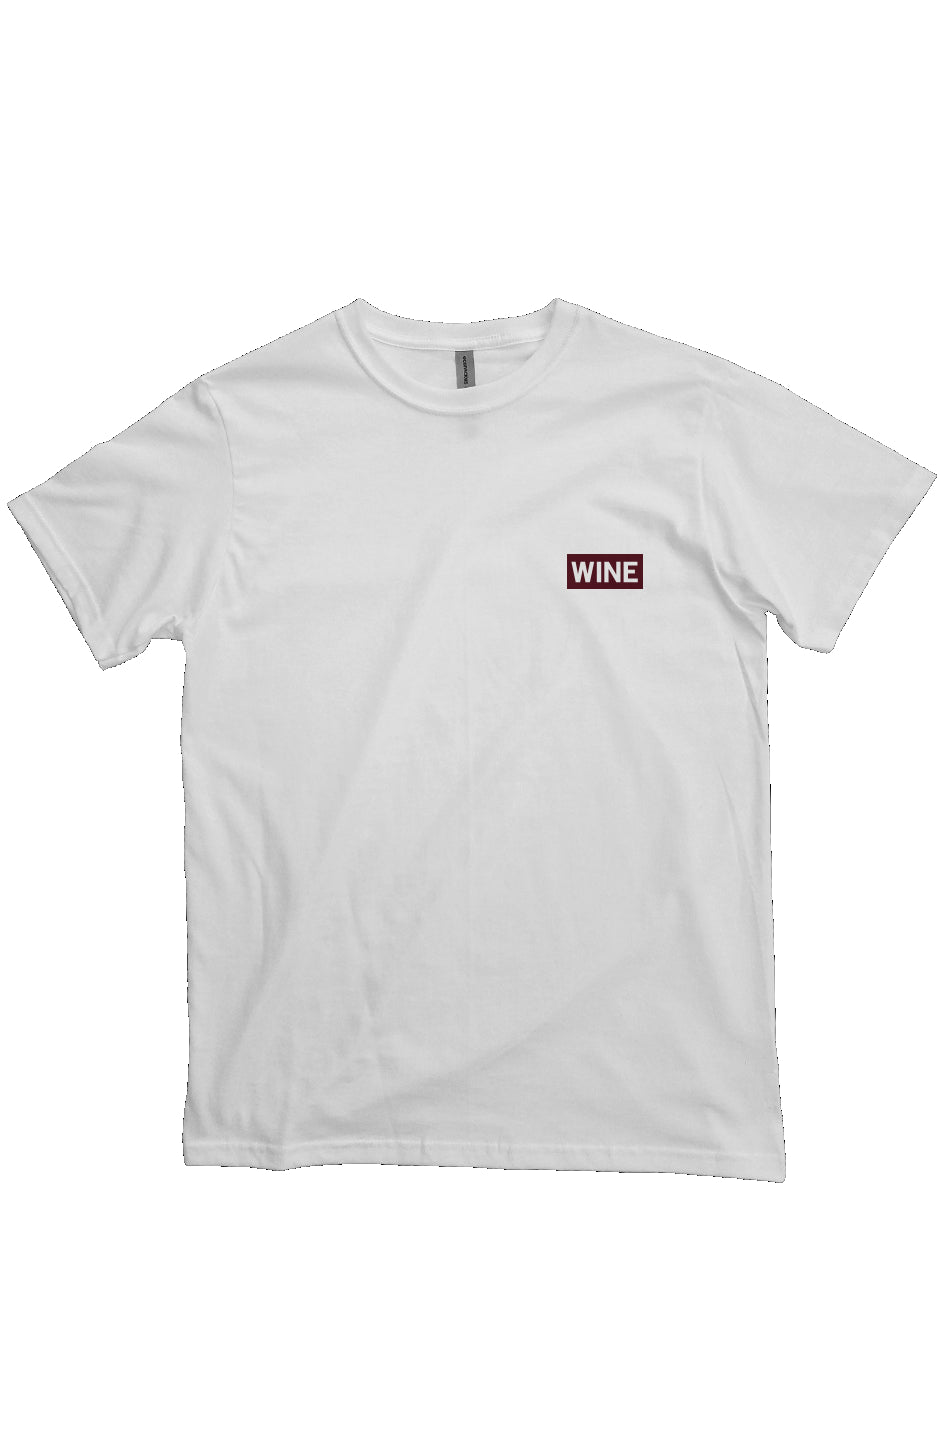 WINE Heavyweight T Shirt - White